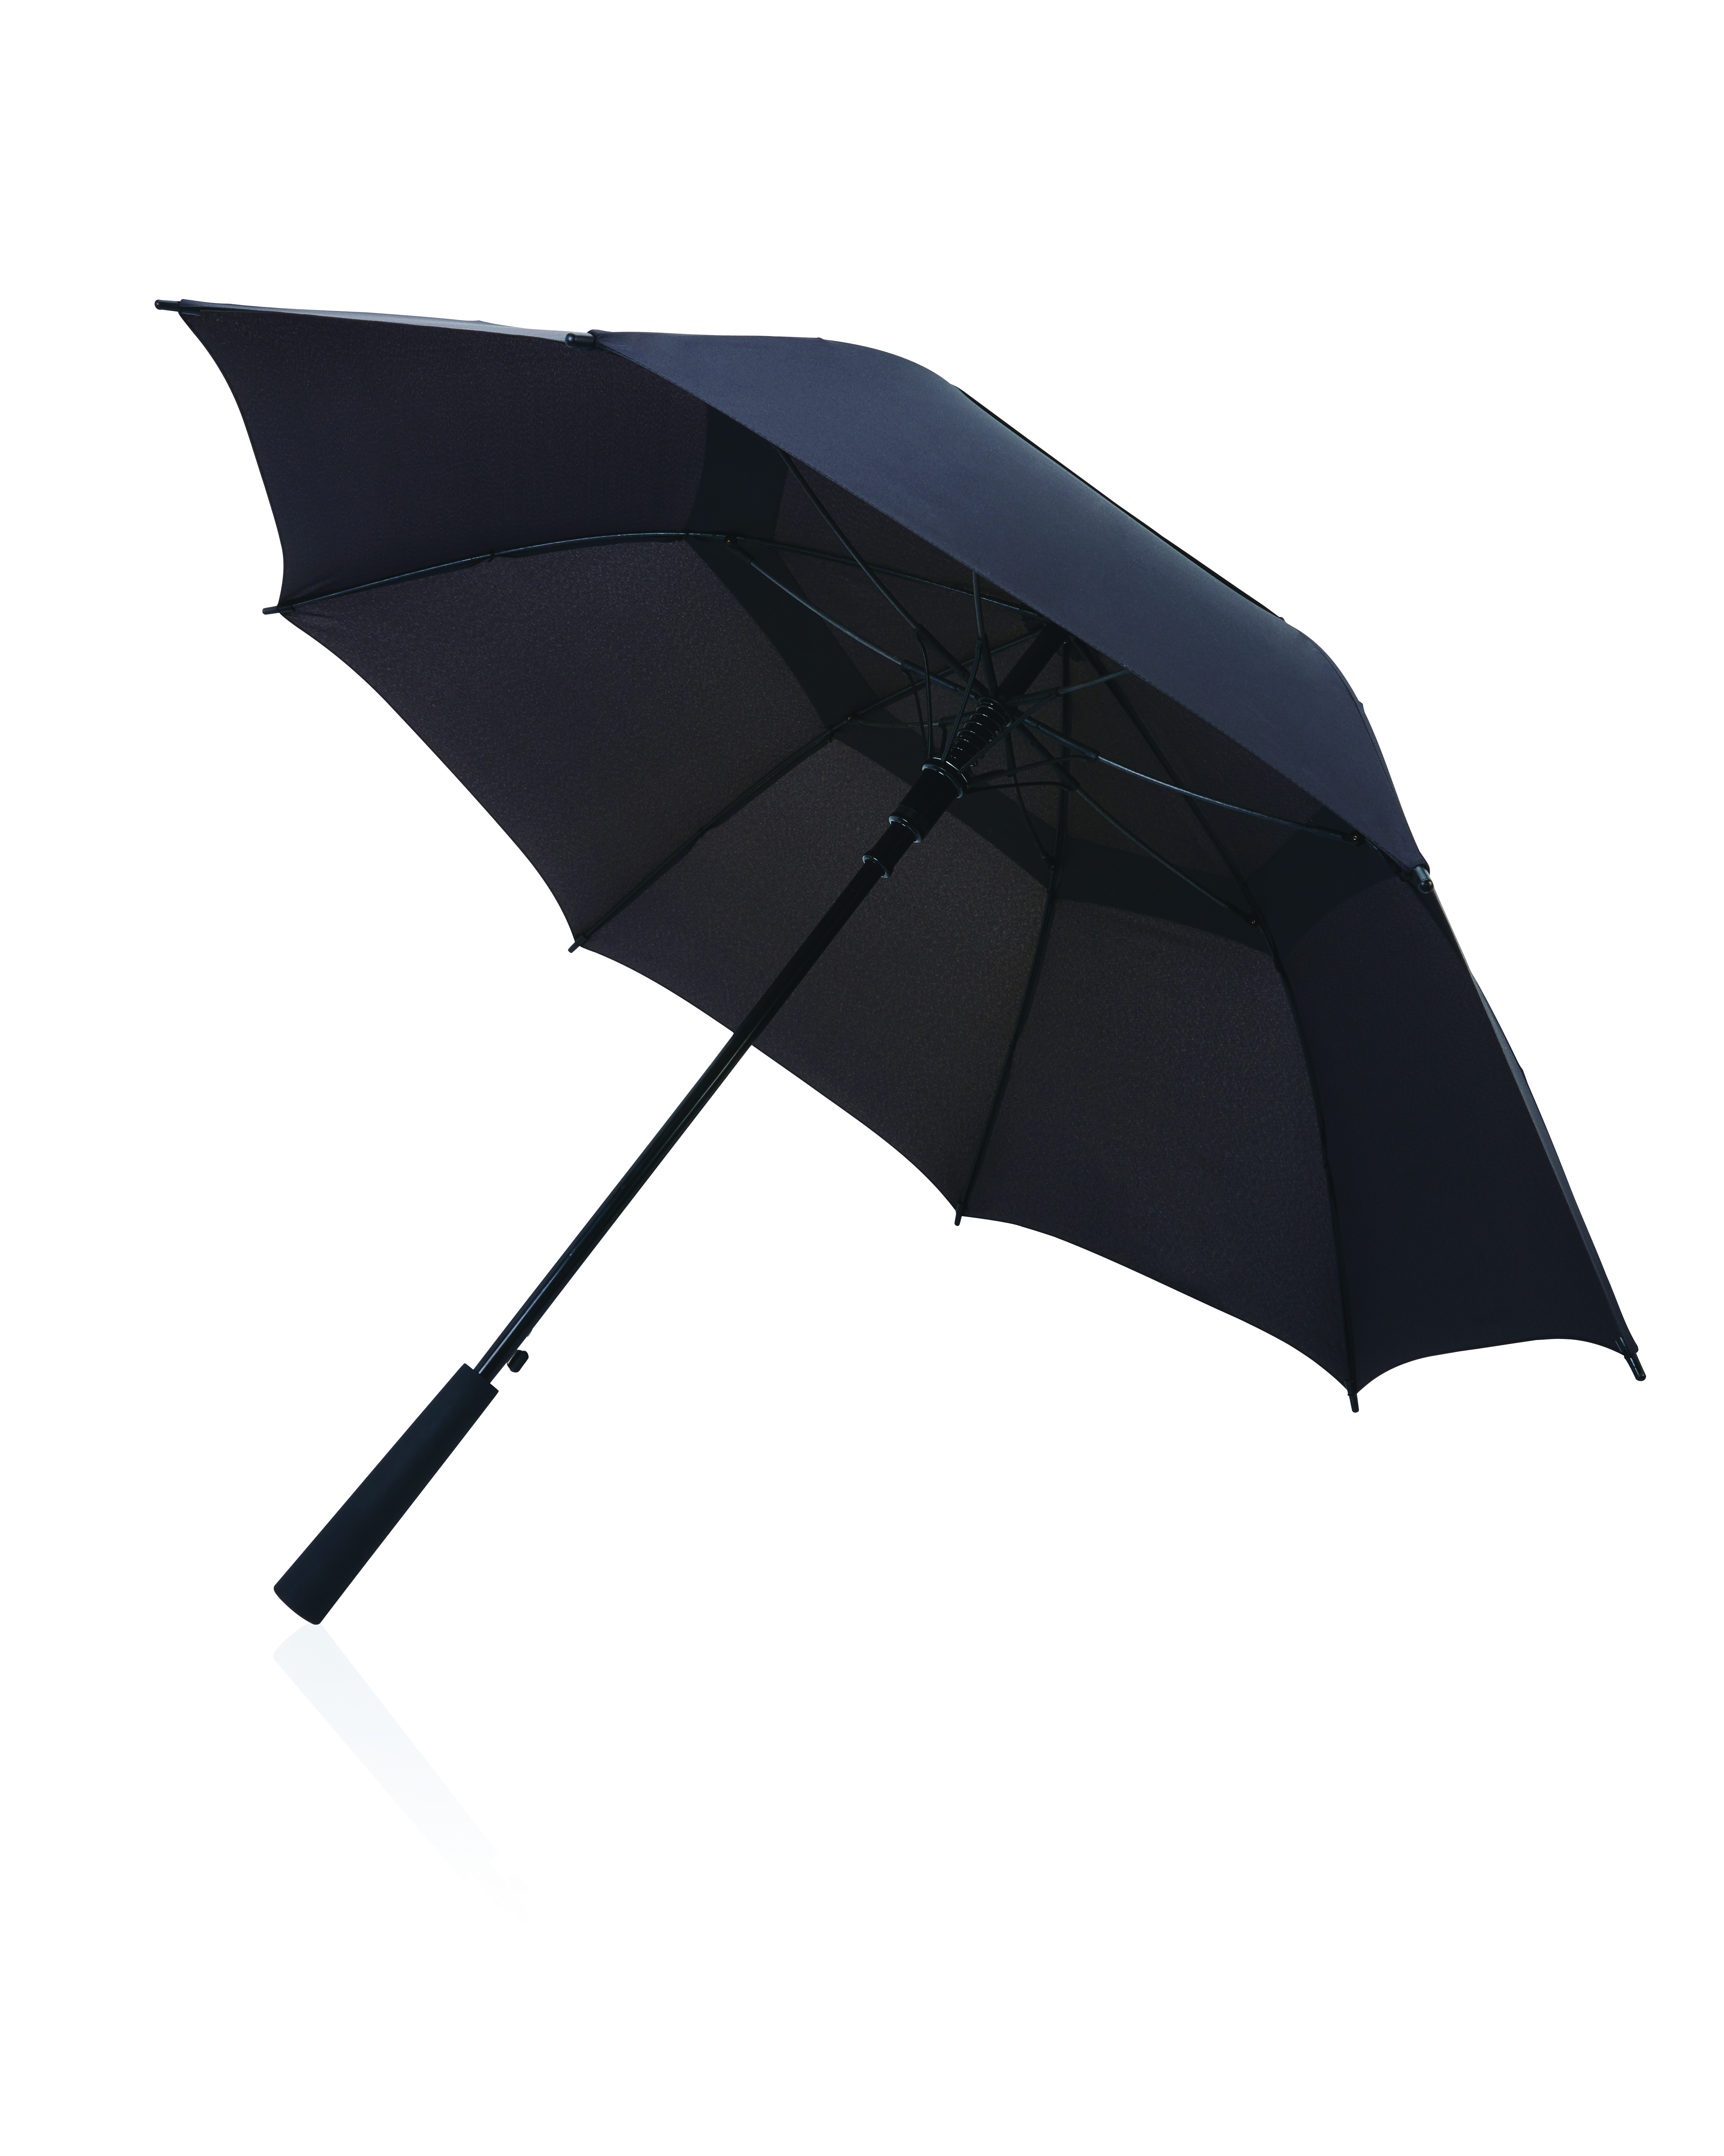 Parapluie Tempête à Double Couche - Giverny